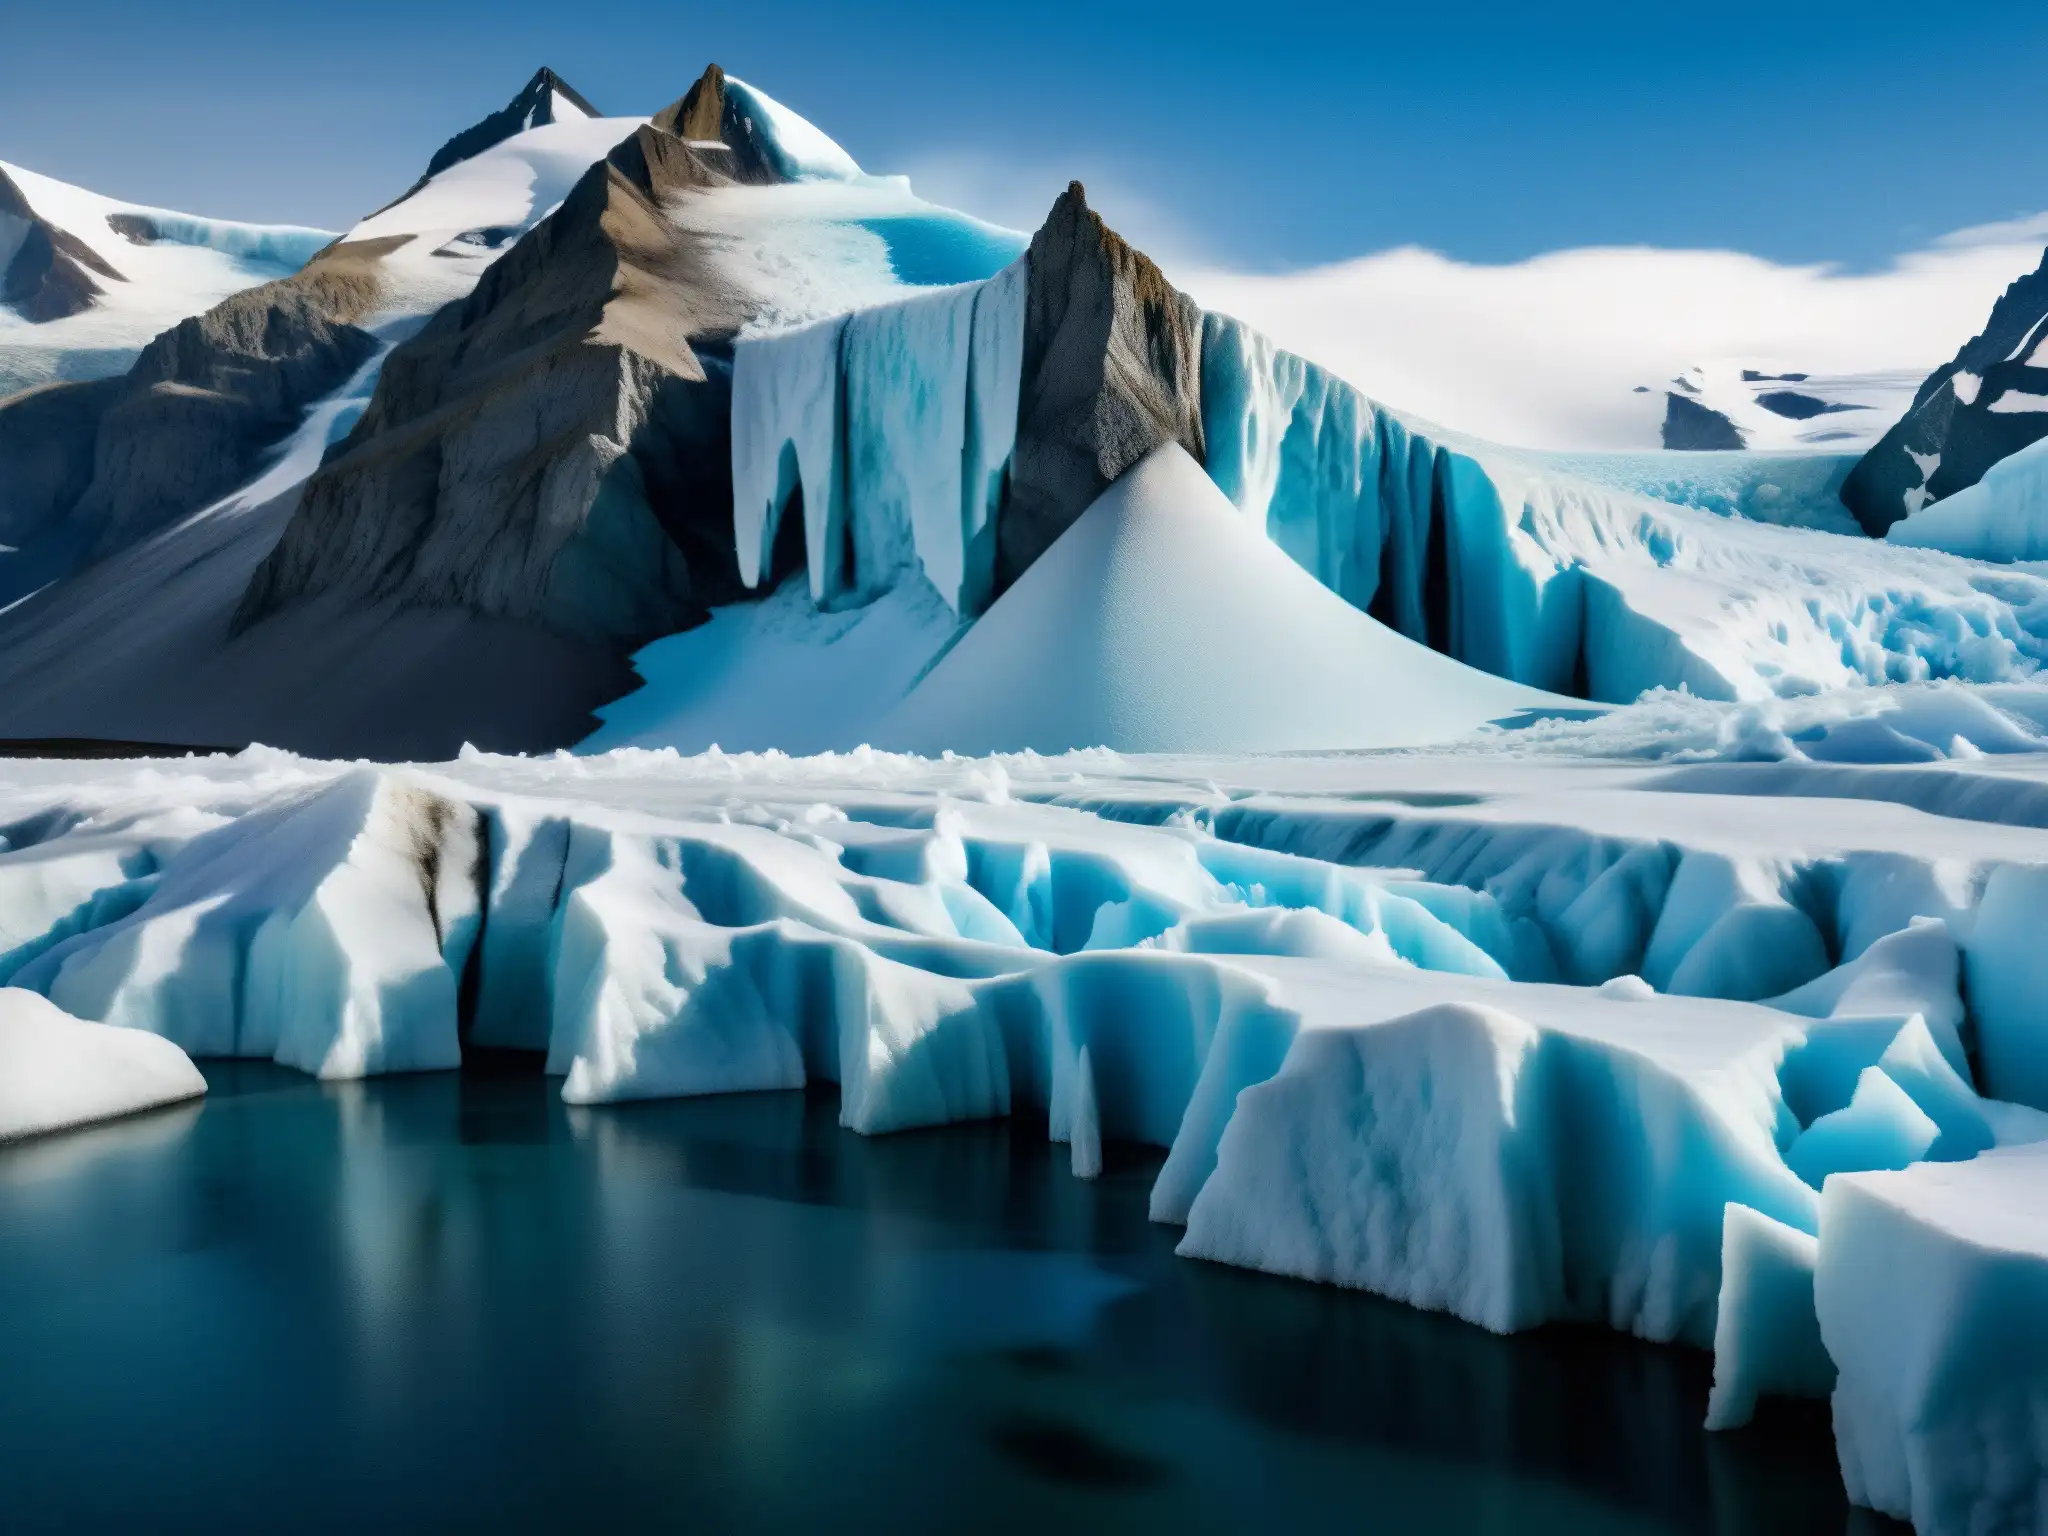 Detalle de glaciar derritiéndose, muestra impacto del calentamiento global en la naturaleza